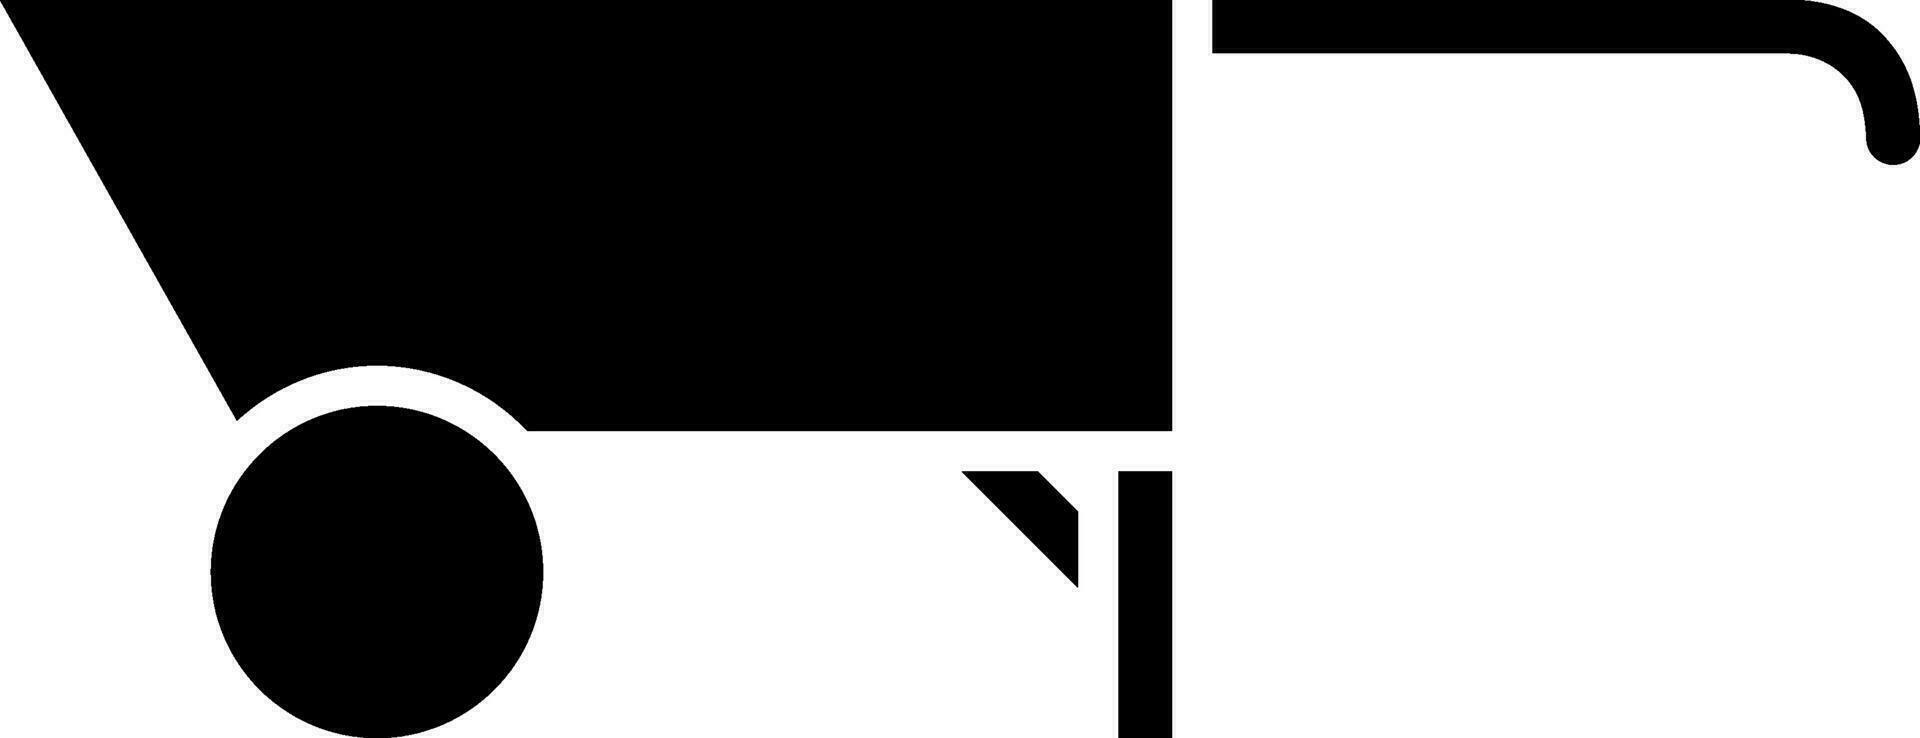 Wheelbarrow icon in black color. vector